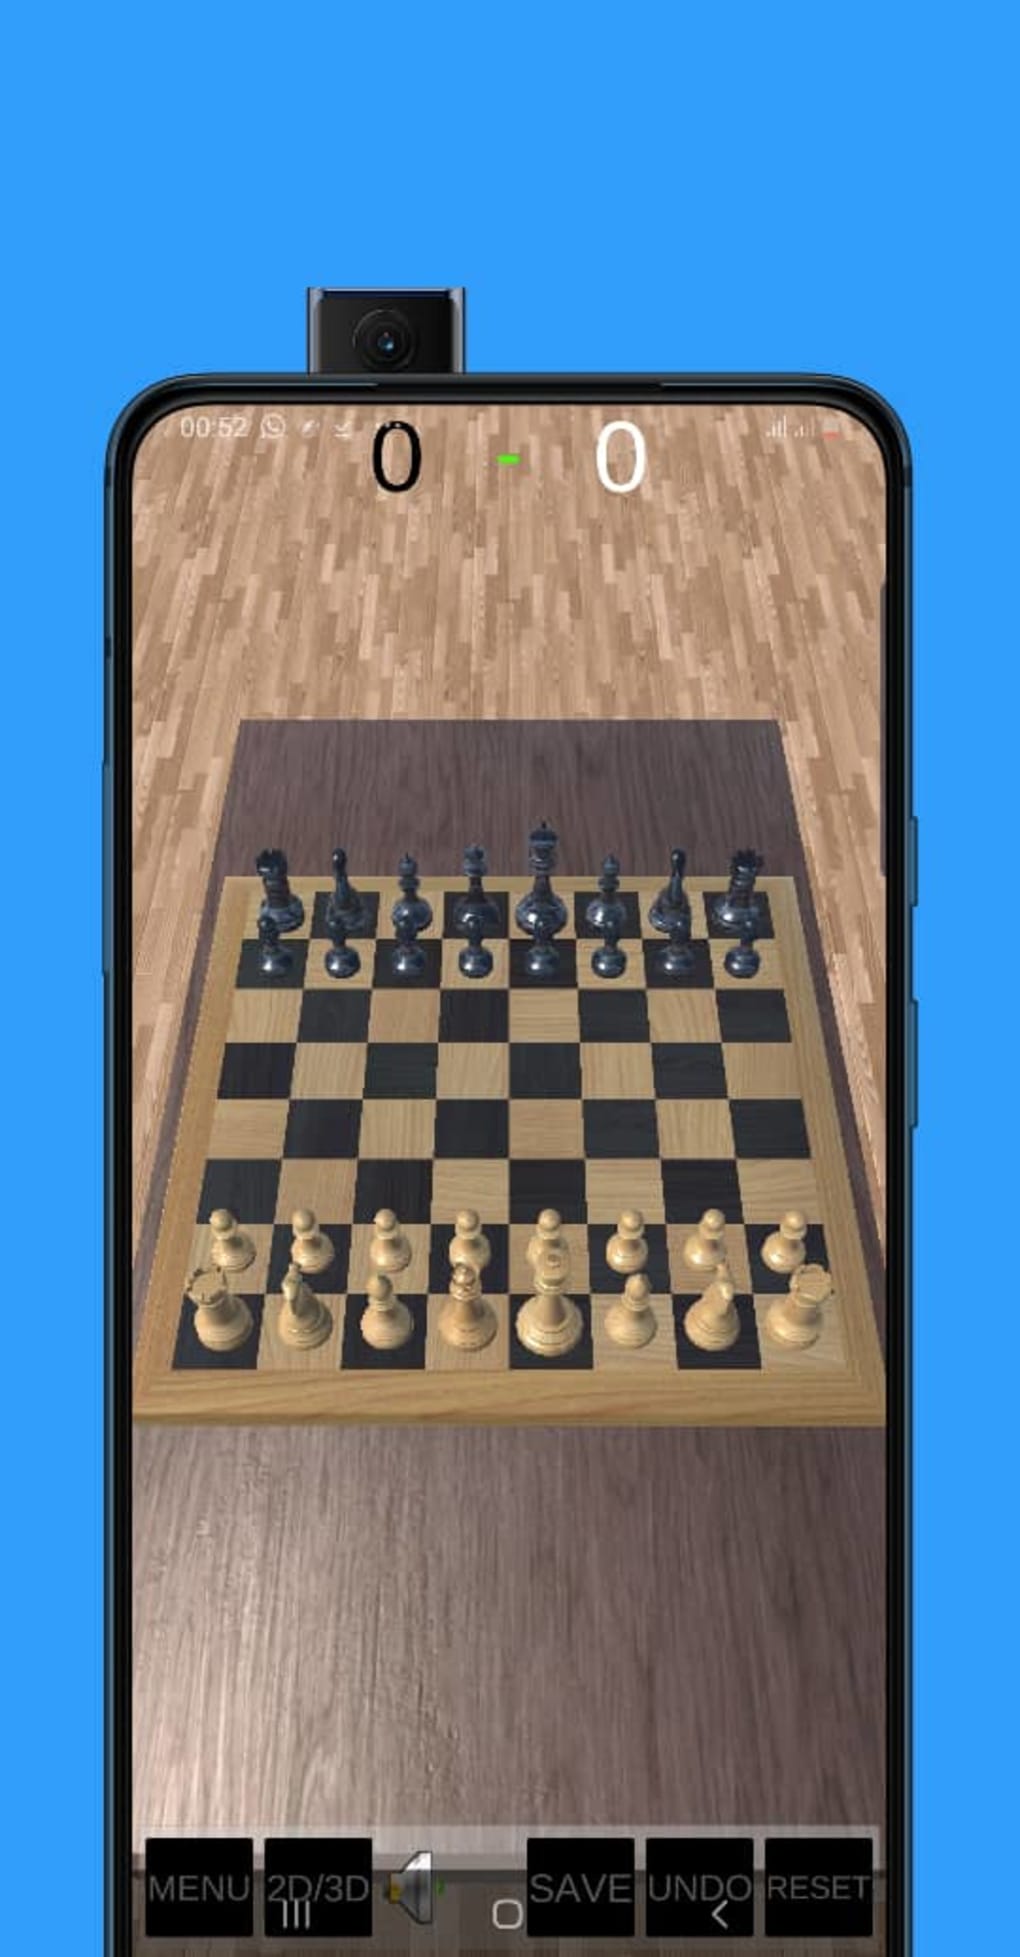 Chess Titans - Chess Club 